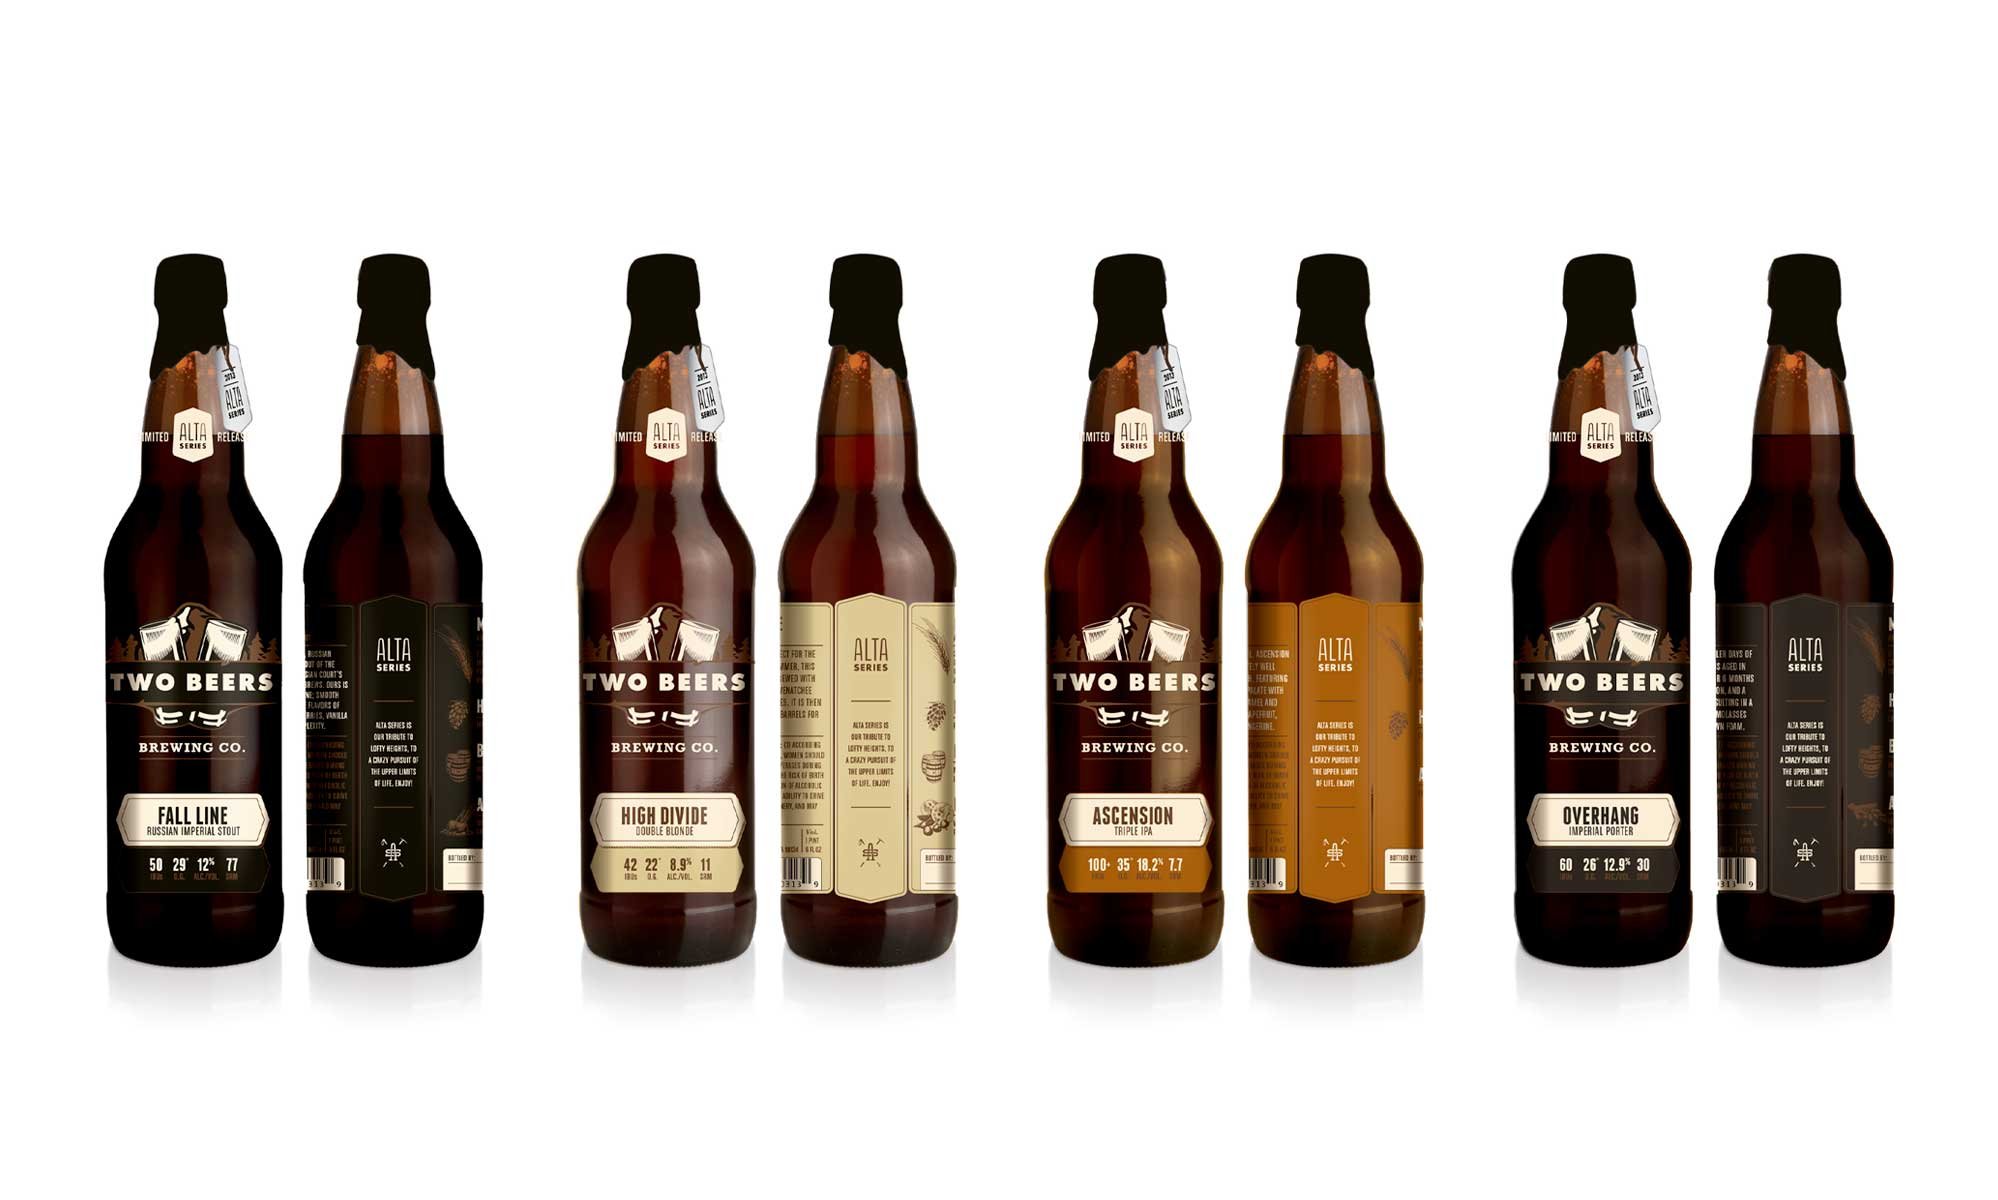 Two-Beers-Alta-Series-Beer-Bottle-Packaging-Concepts.jpg